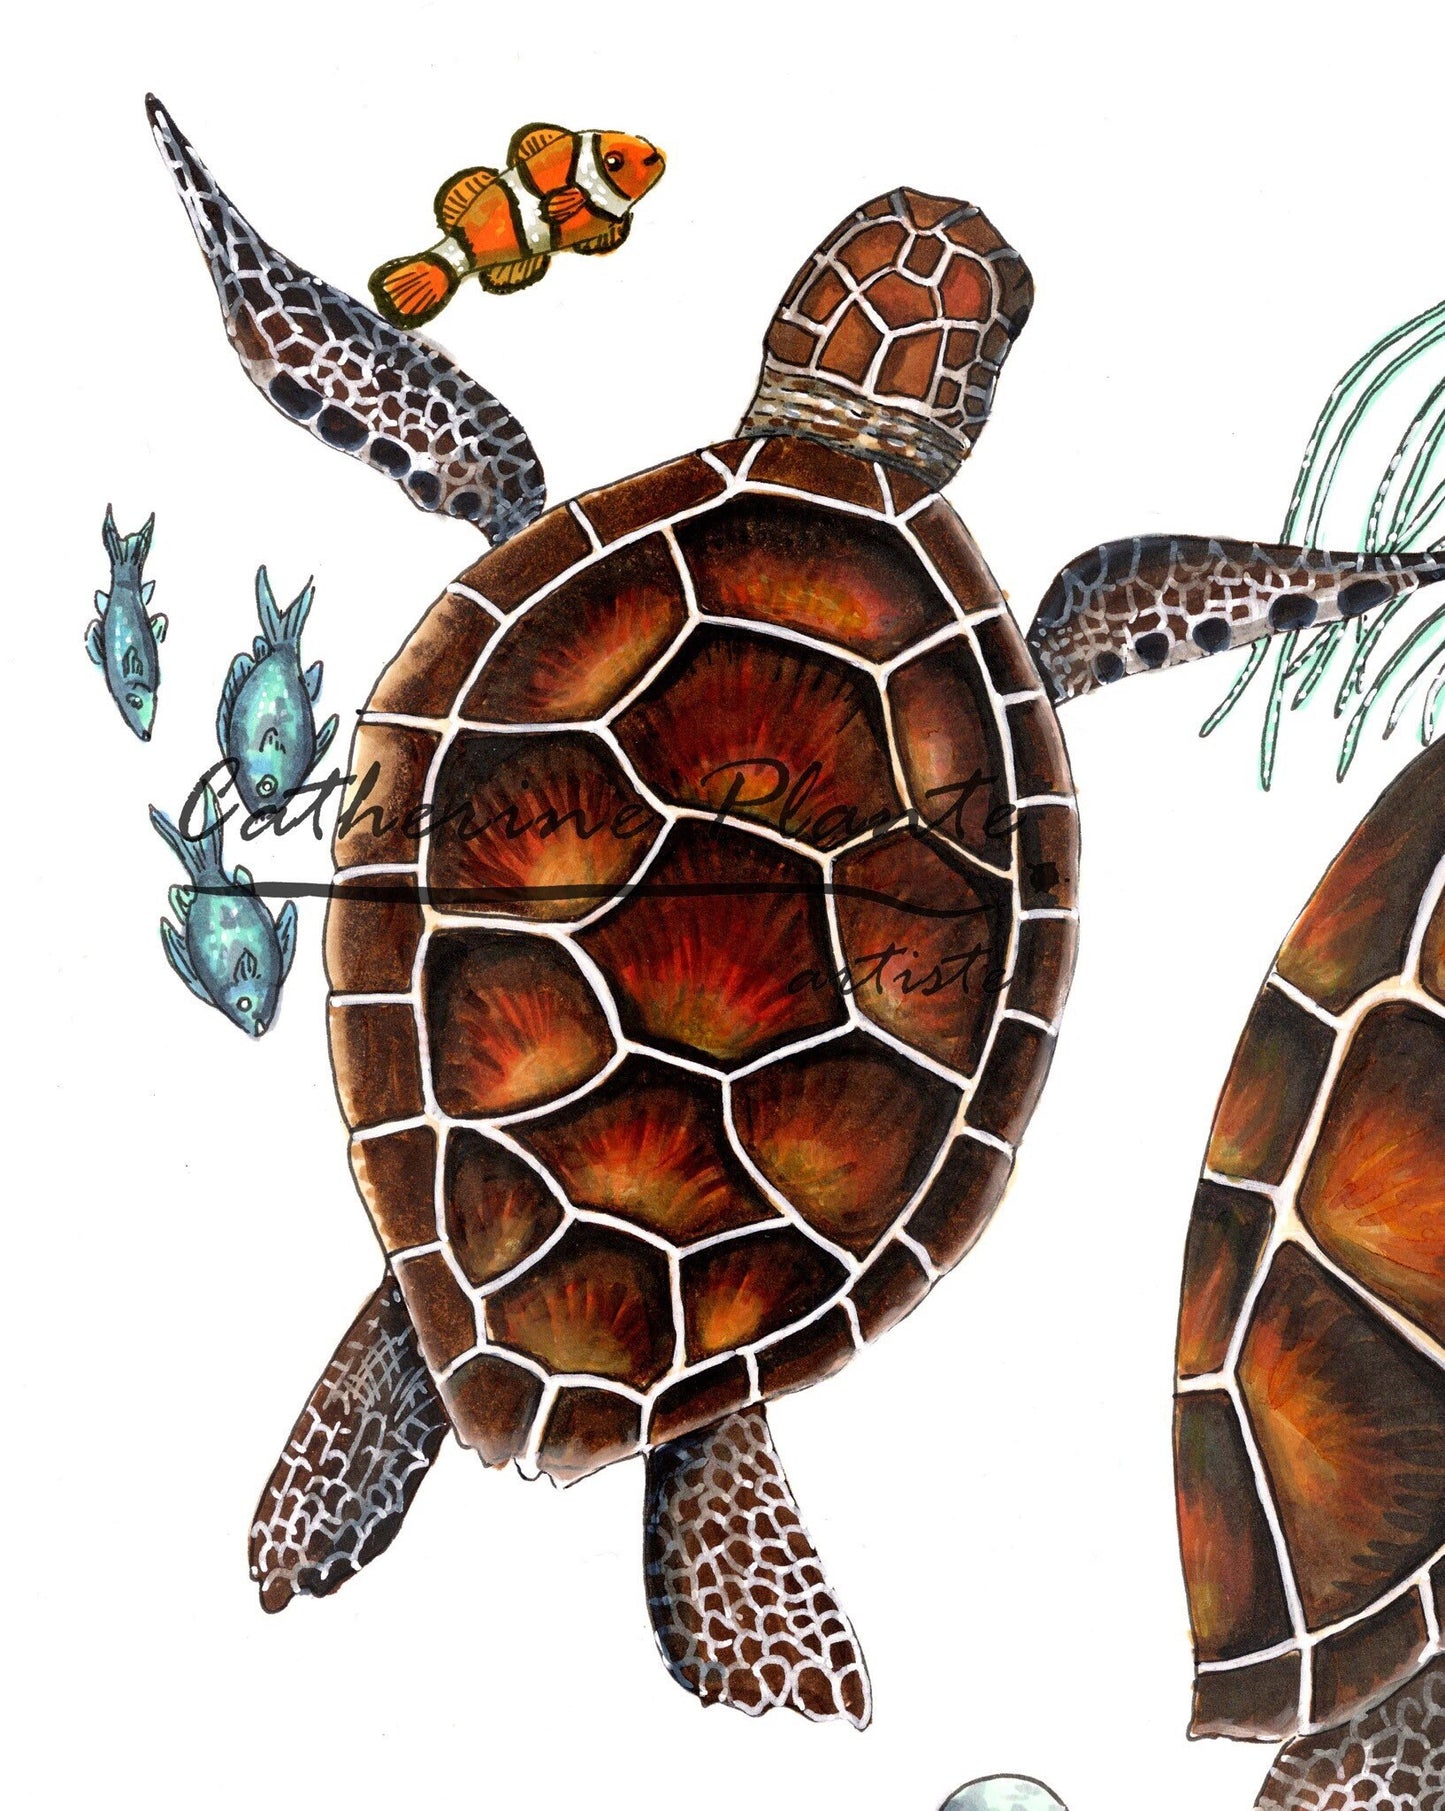 Impression d'art - Danse aquatique des tortues